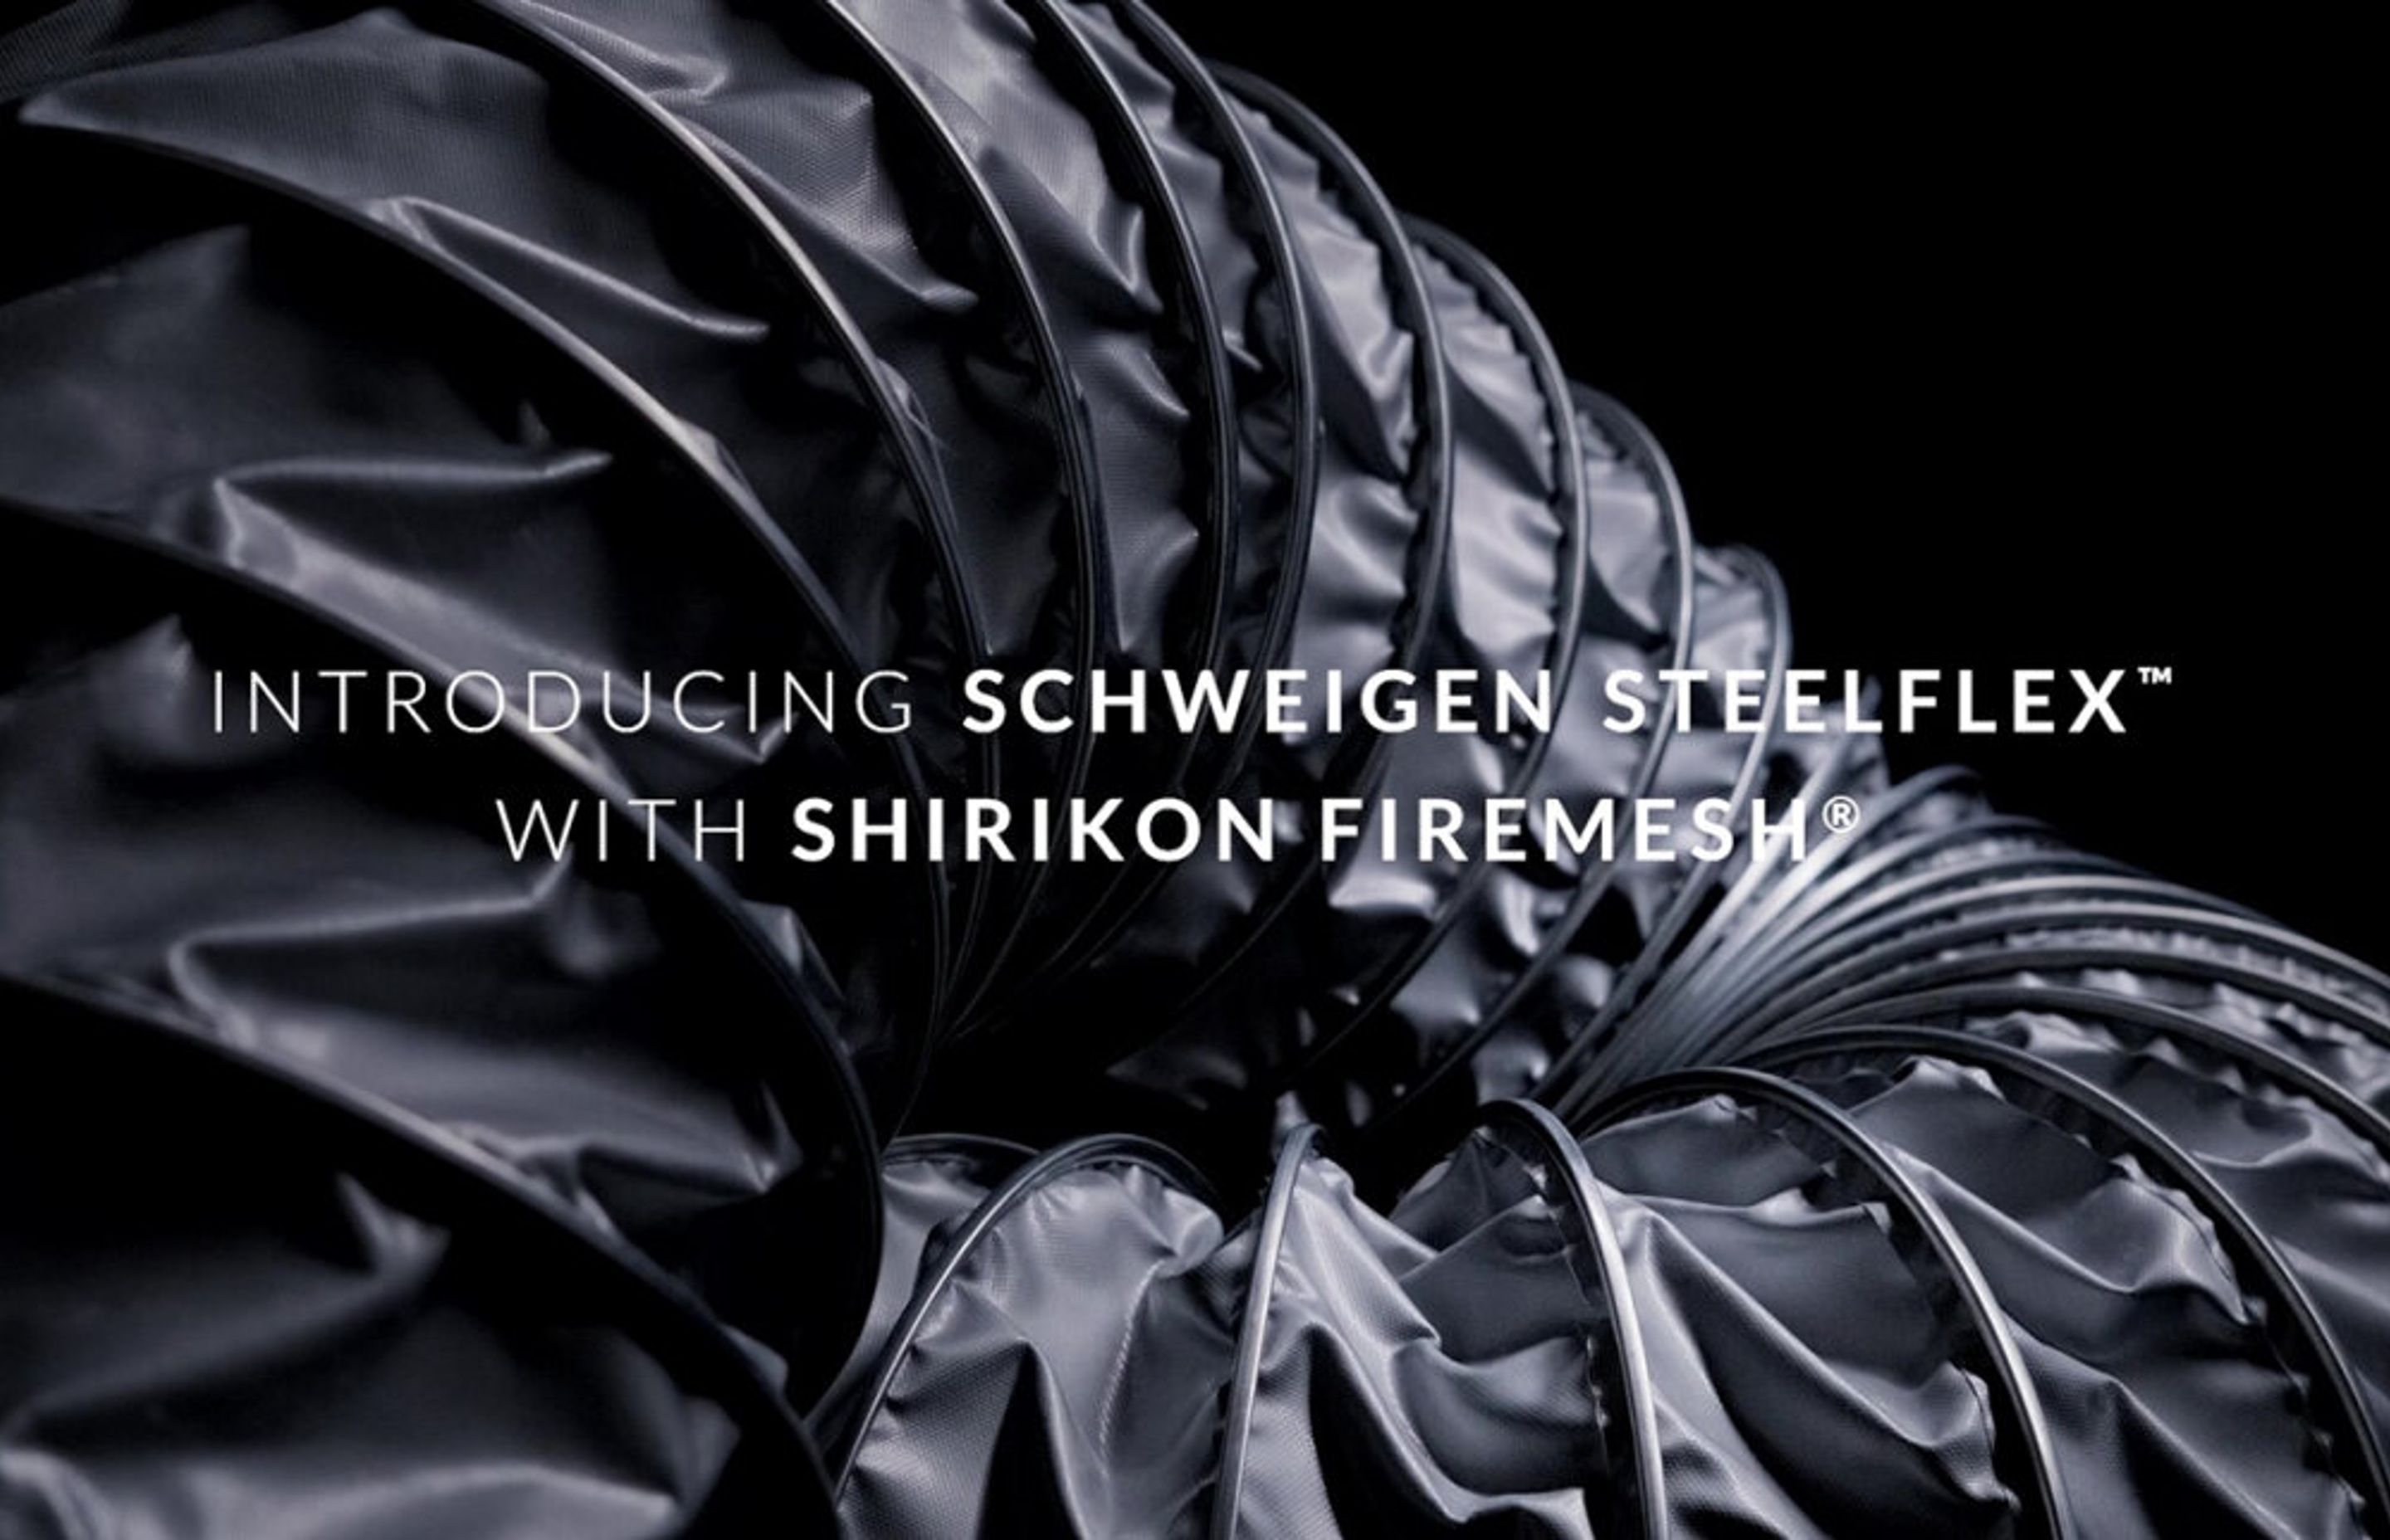 Every home deserves Schweigen SteelFlex™